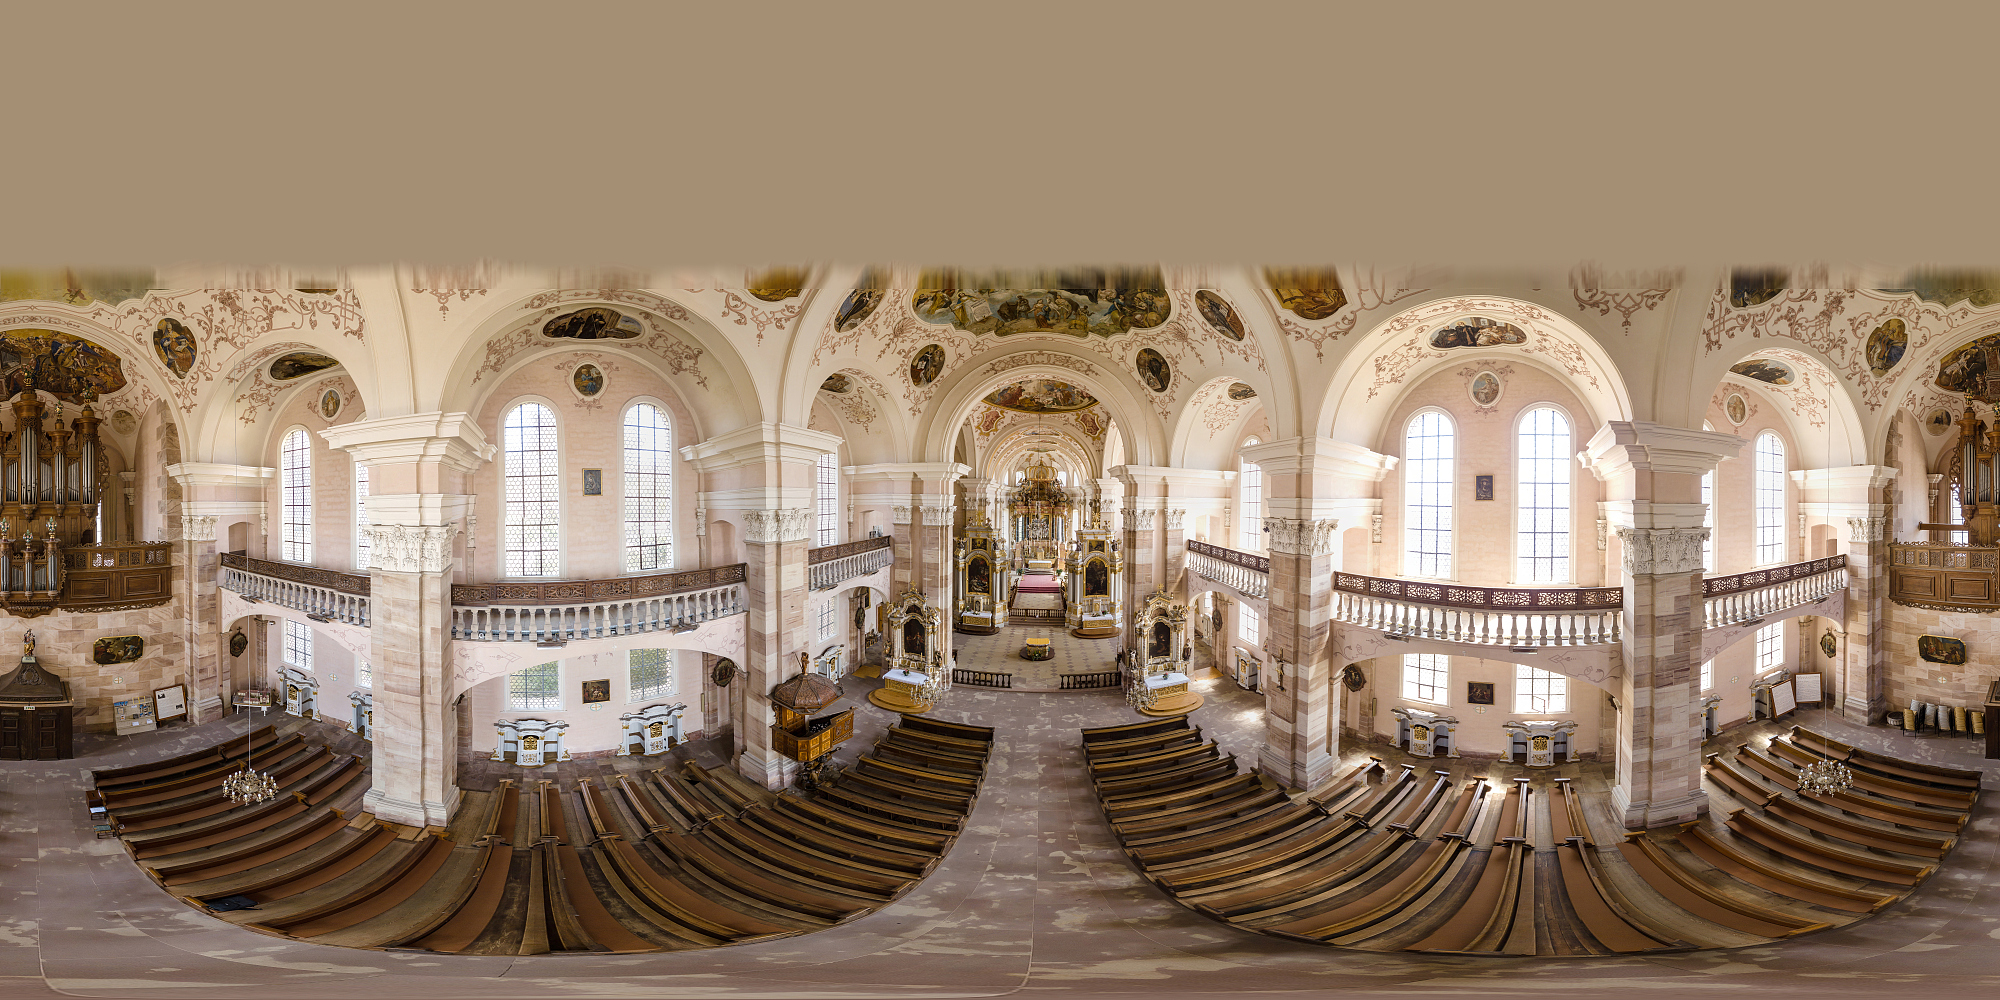 从无人机到Ebersmunster教堂内部的360度全景鸟瞰图。阿尔萨斯,法国图片下载